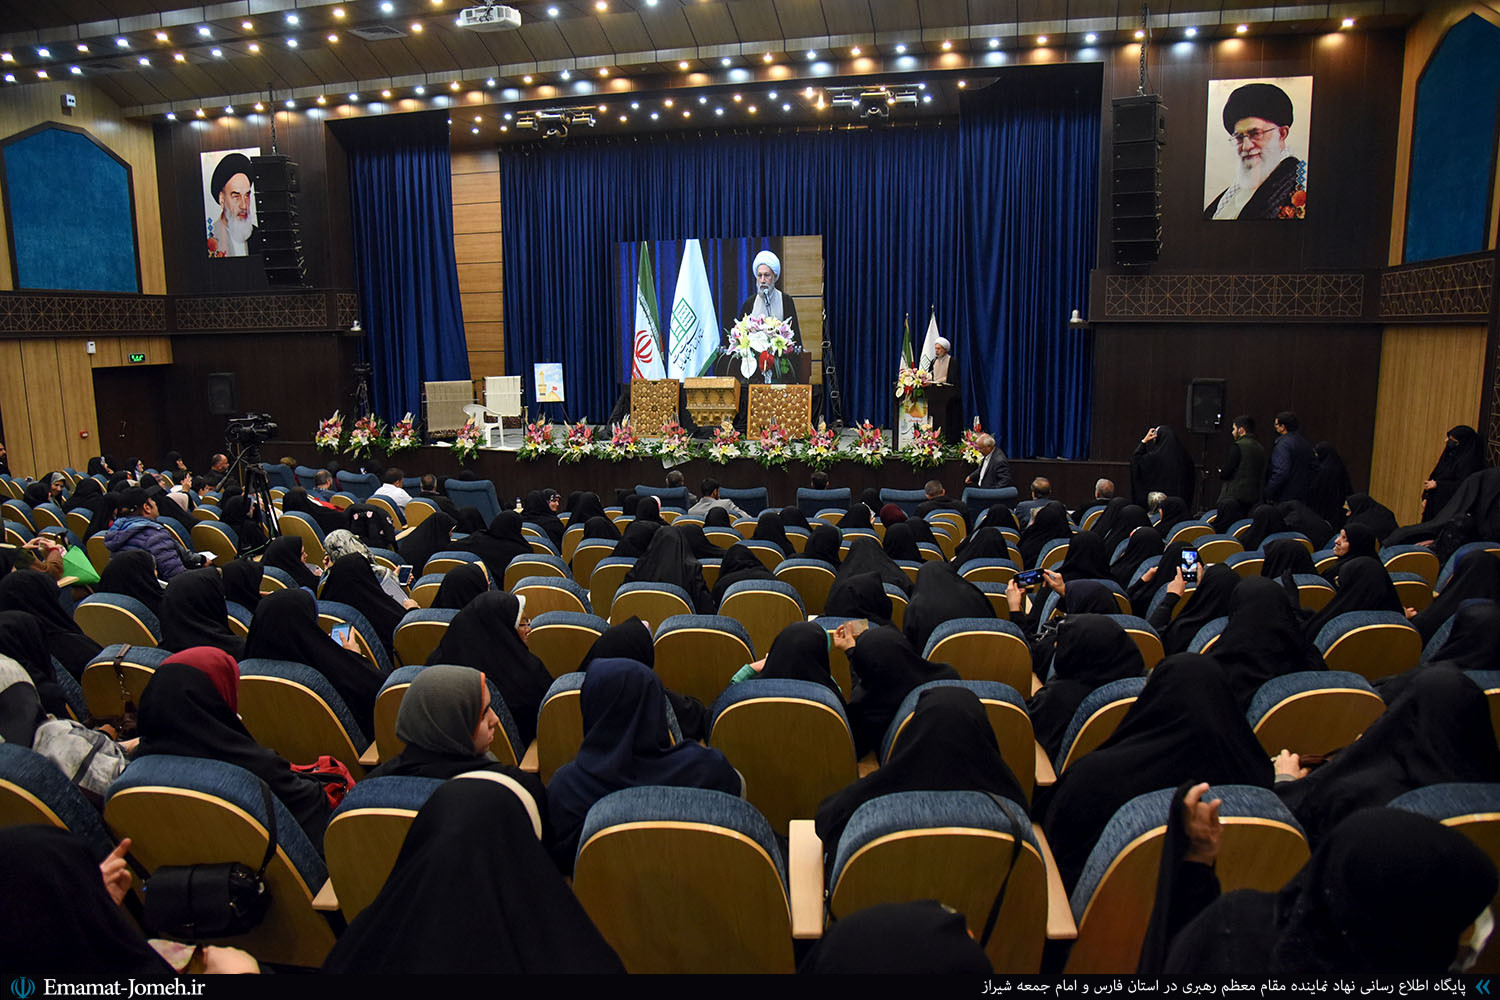 گردهمایی نشان ارادت زینبی در شیراز با حضور آیت الله دژکام